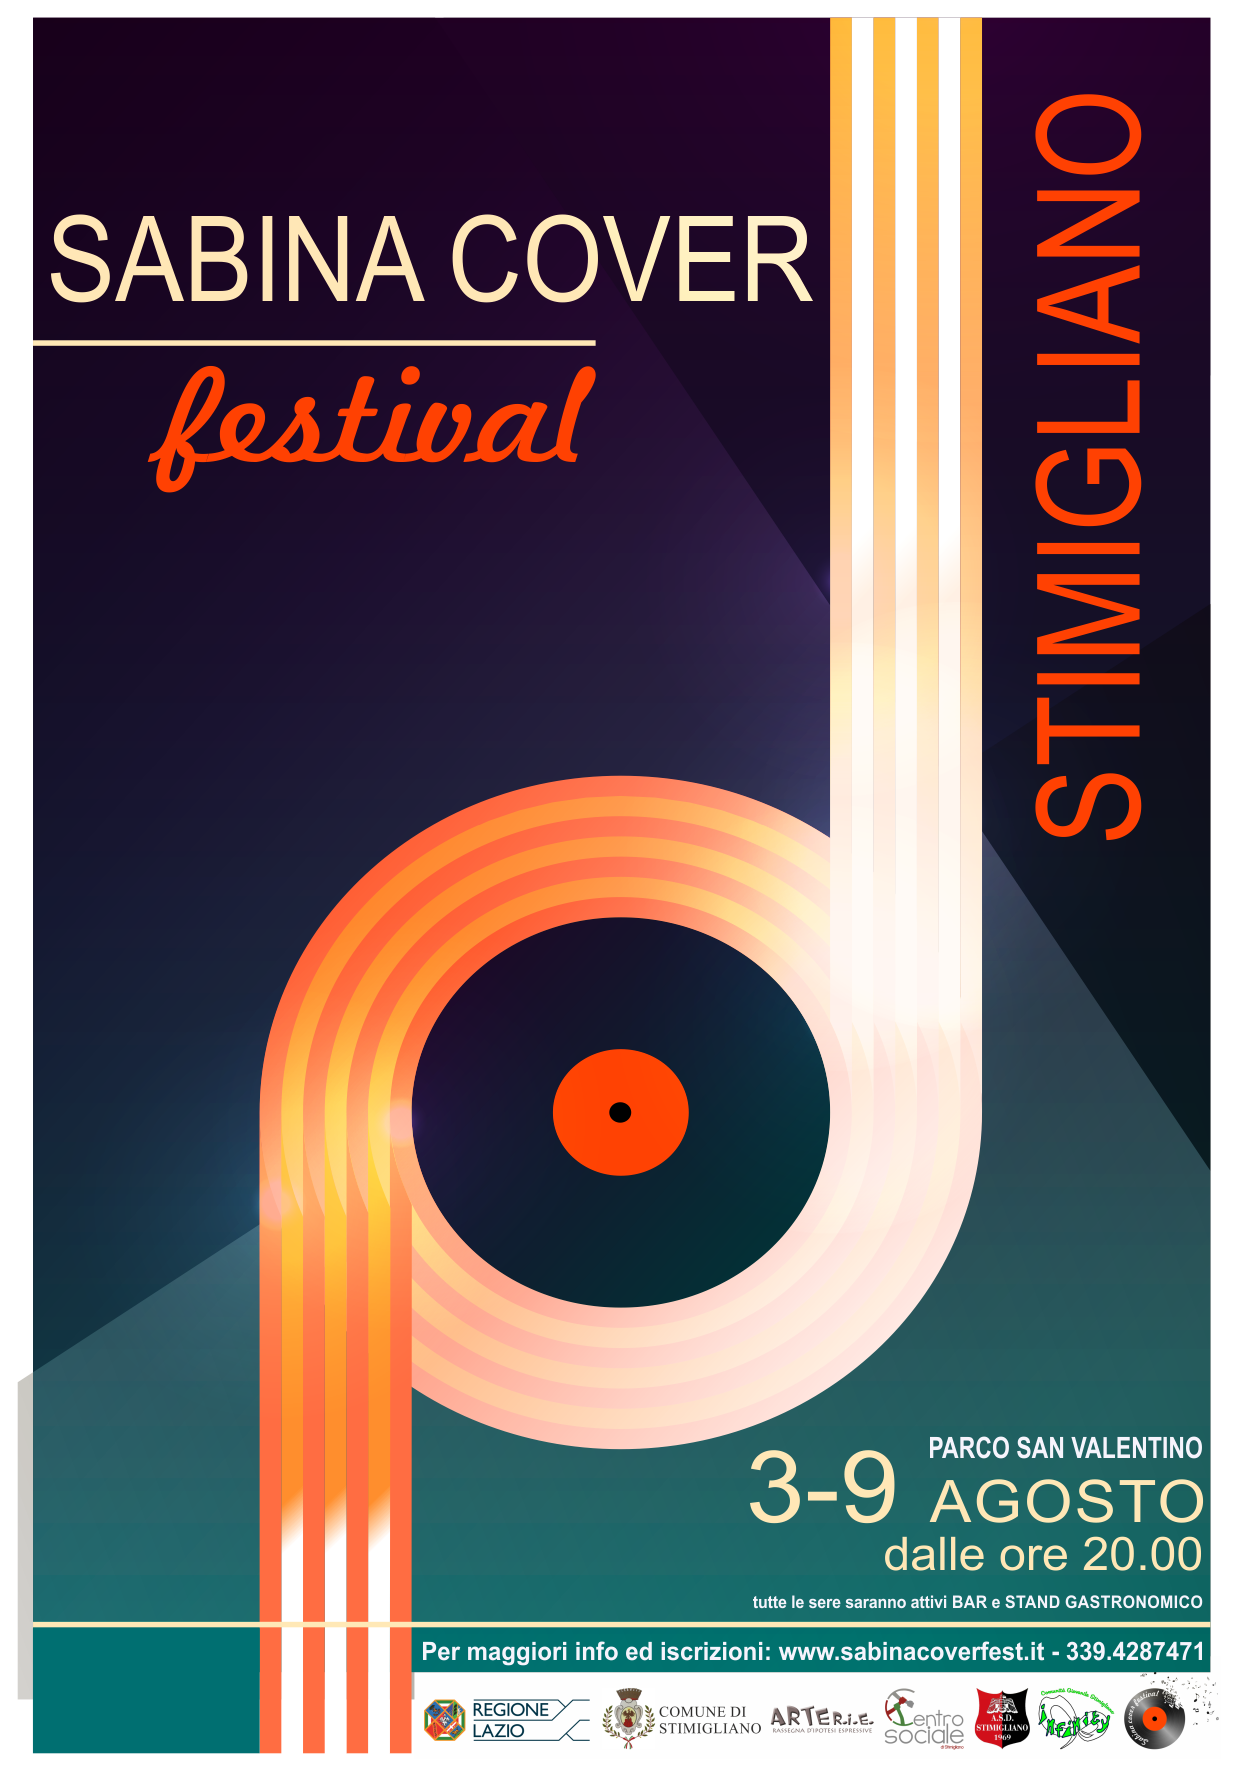 Rieti. Al via la prima edizione del Sabina Cover festival concorso per musica vista e rivista